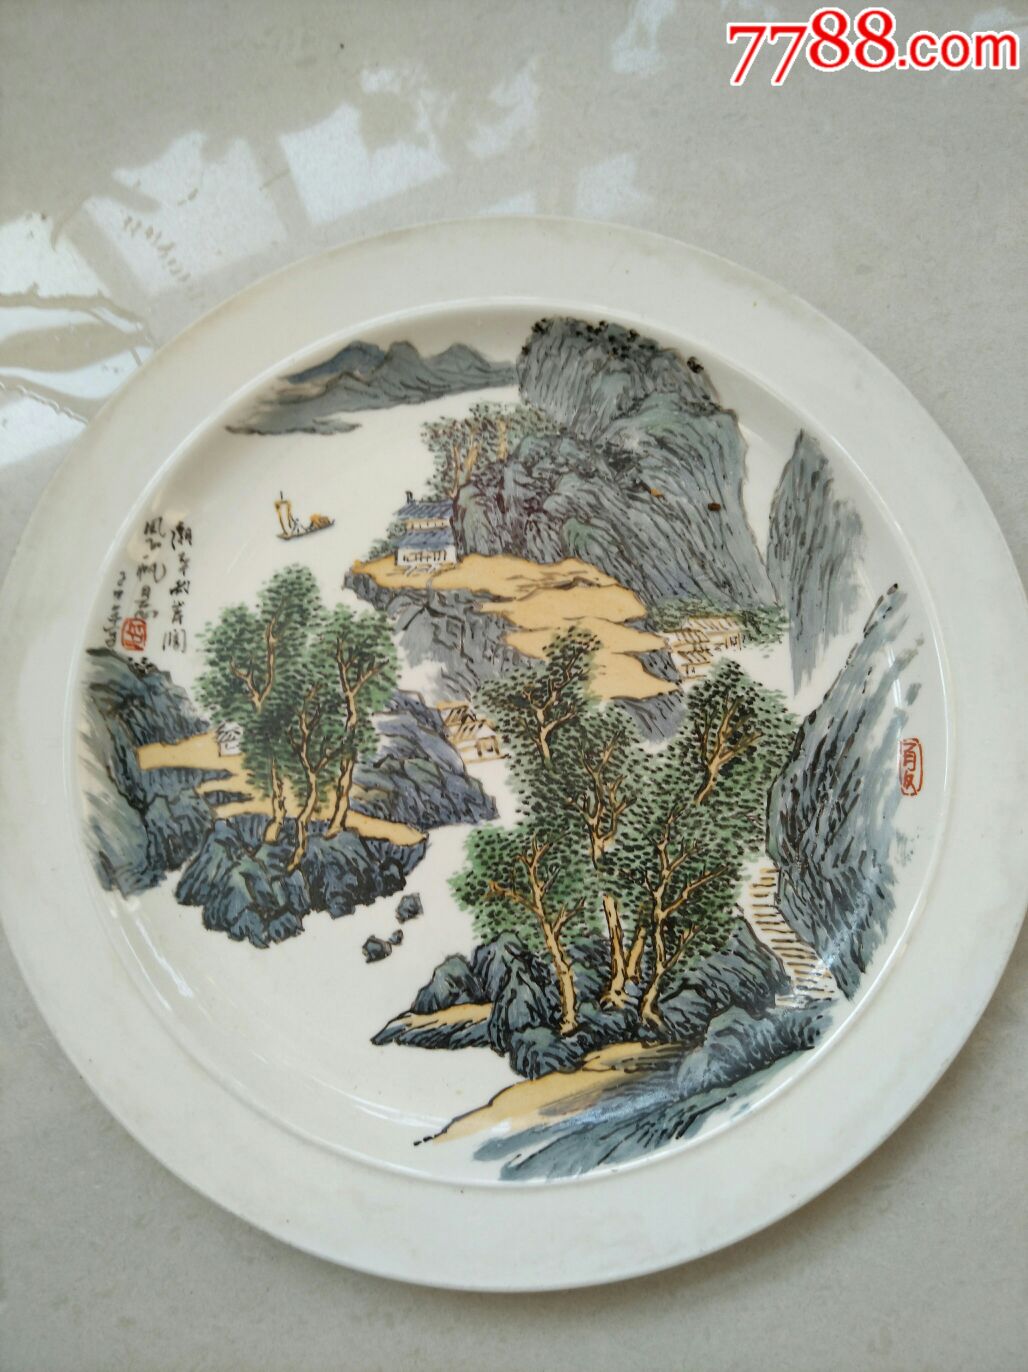 山东淄博陶瓷厂,全手工绘画,山水盘